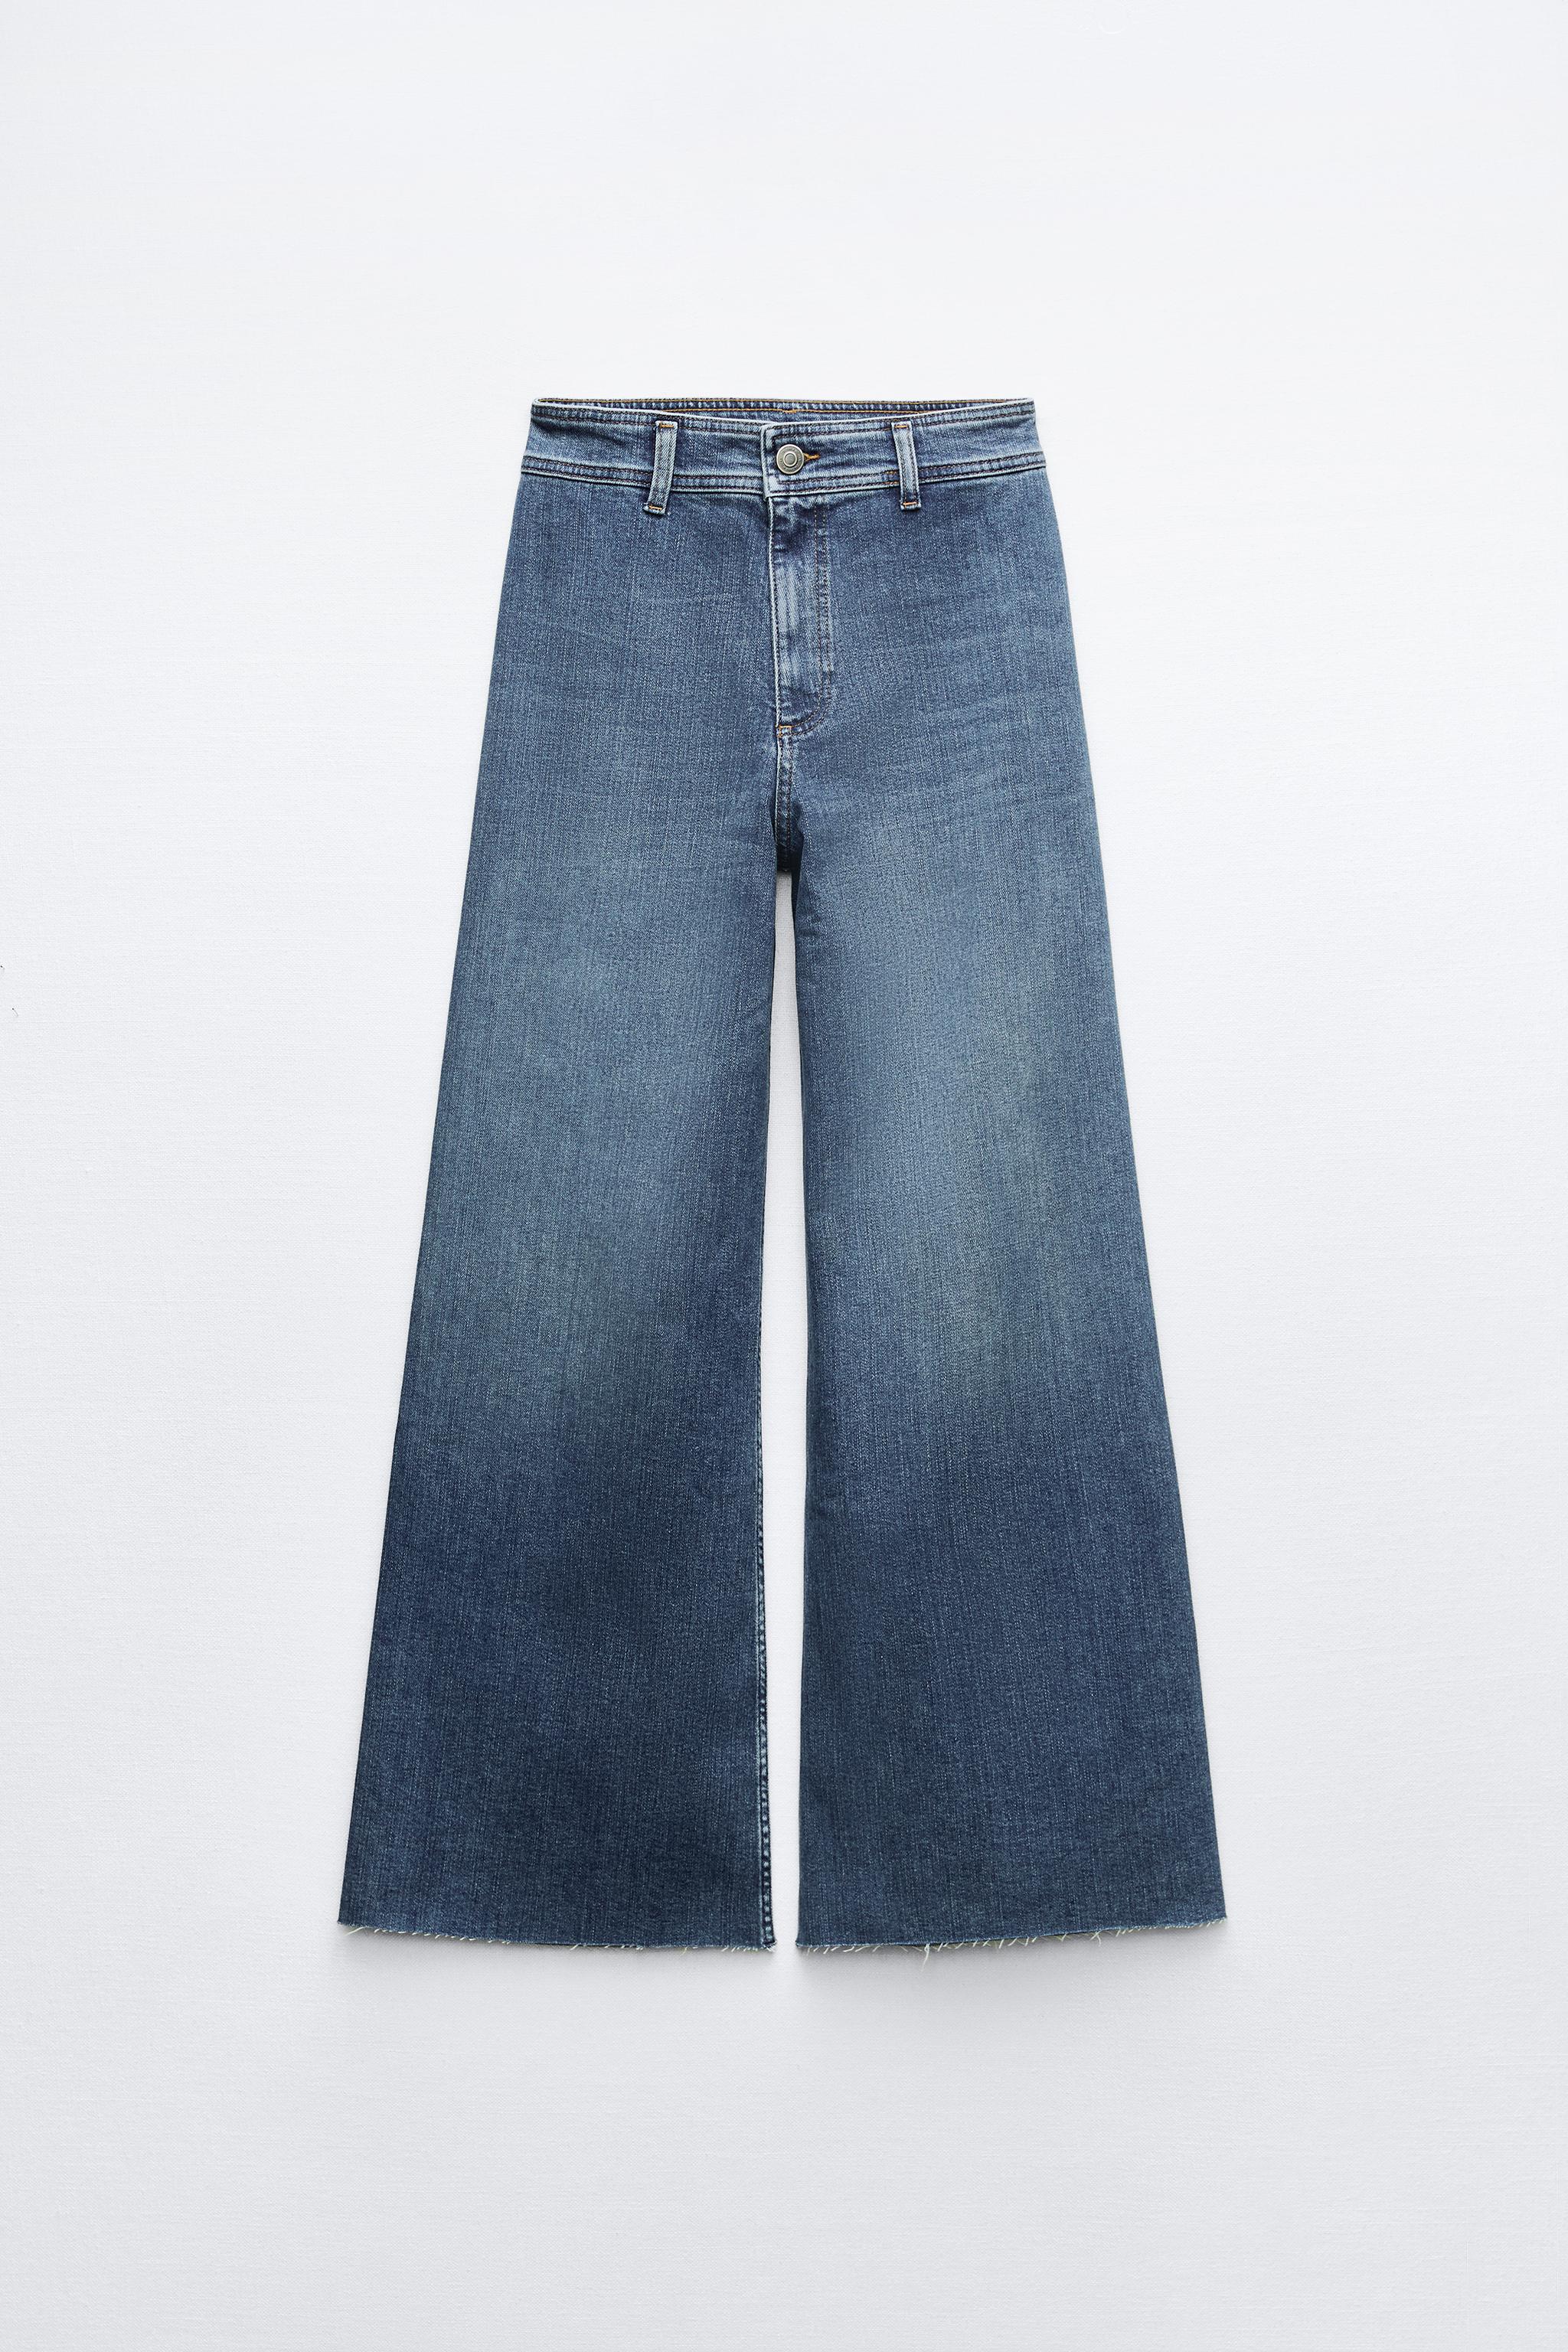 7 jeans que verás por todas partes este otoño, de acuerdo a Zara